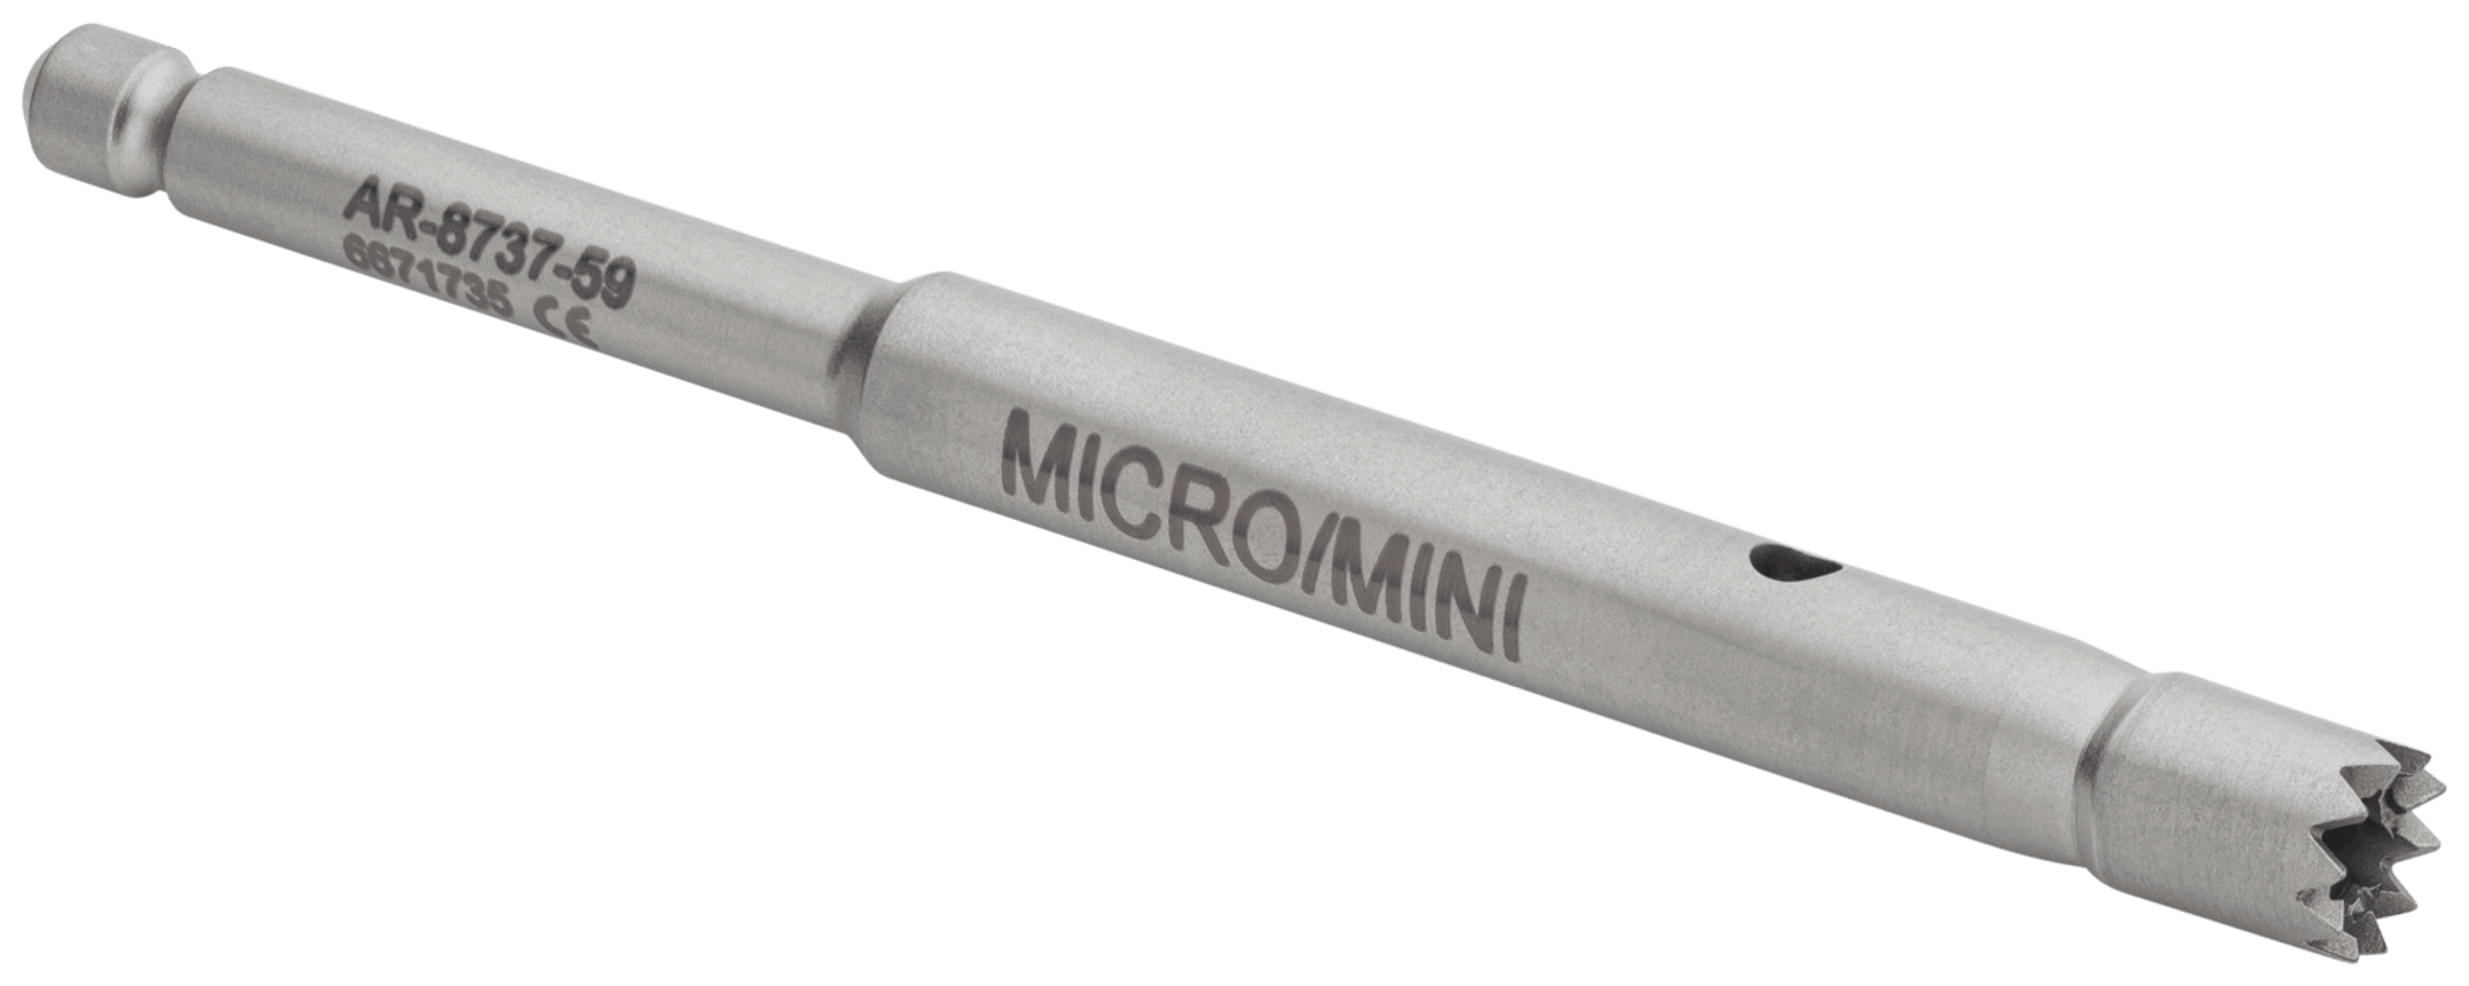 Screw Extractor/Trephine, Micro/Mini CFT